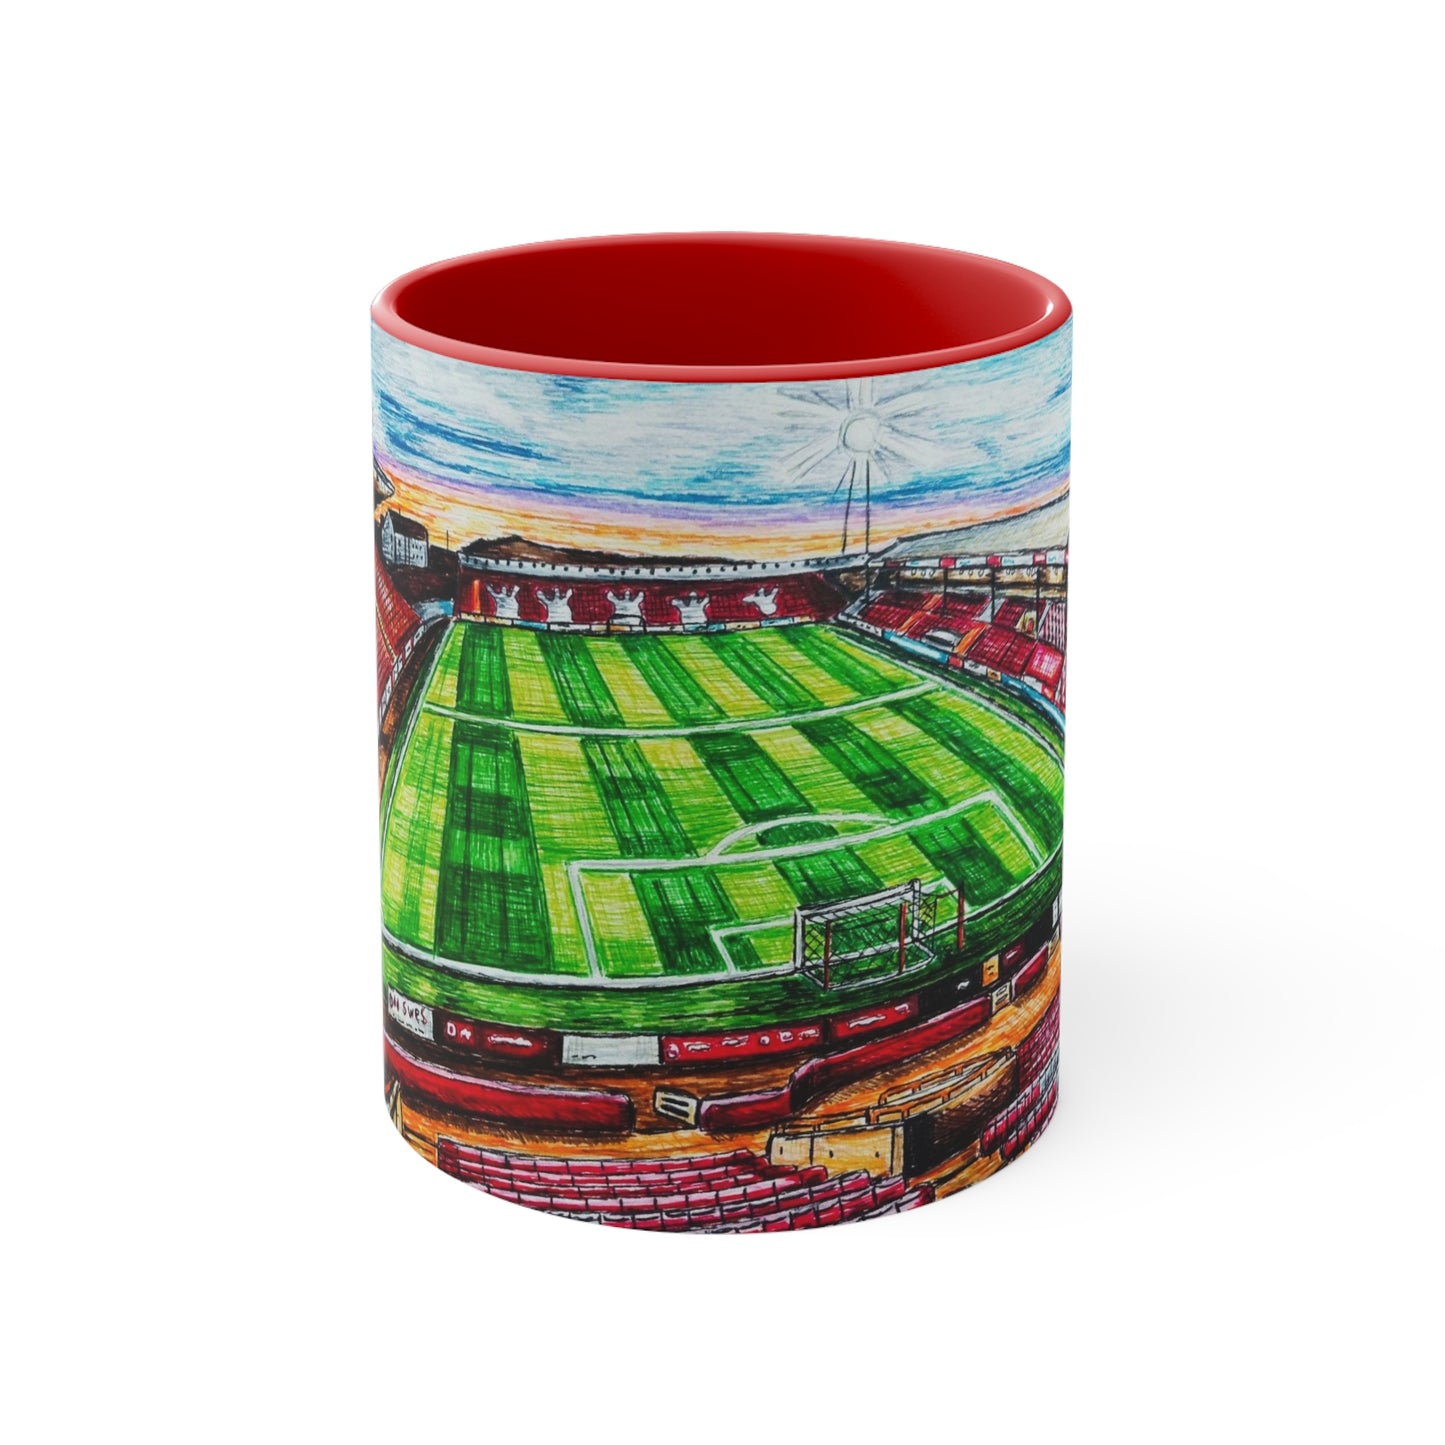 Coffee Mug, 11oz- Aberdeen FC Design